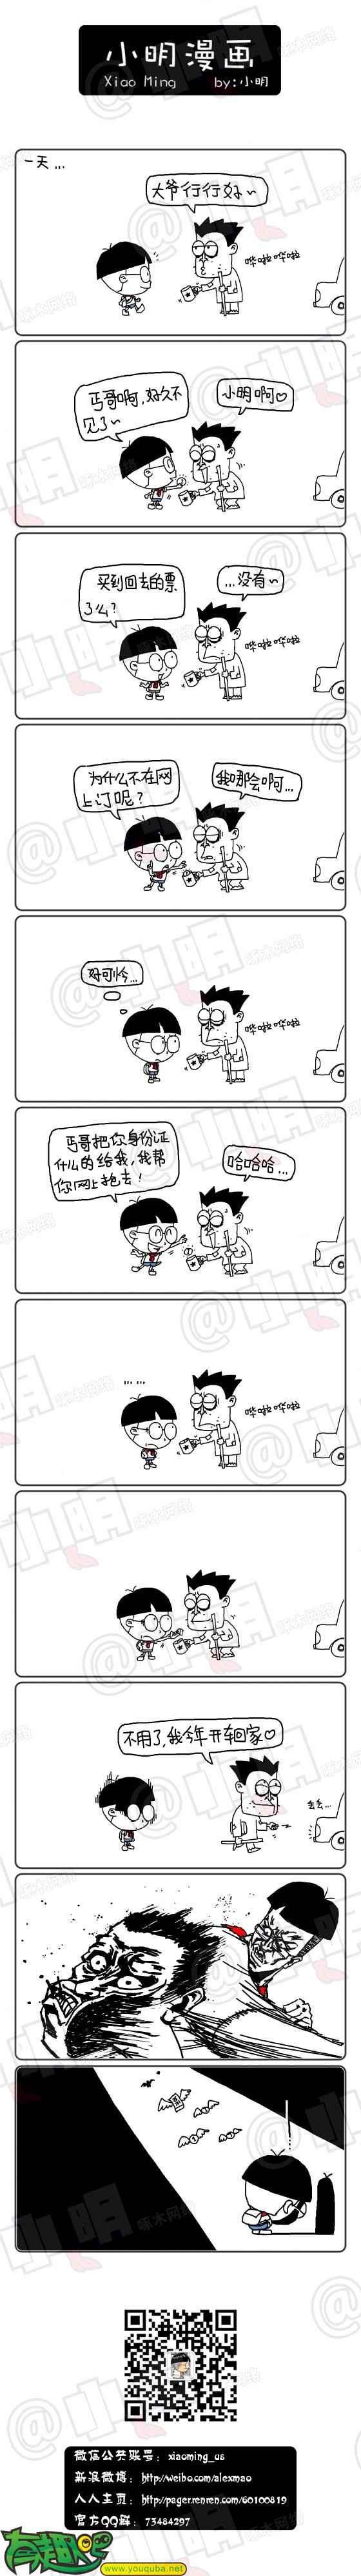 小明系列漫画:乞哥回家